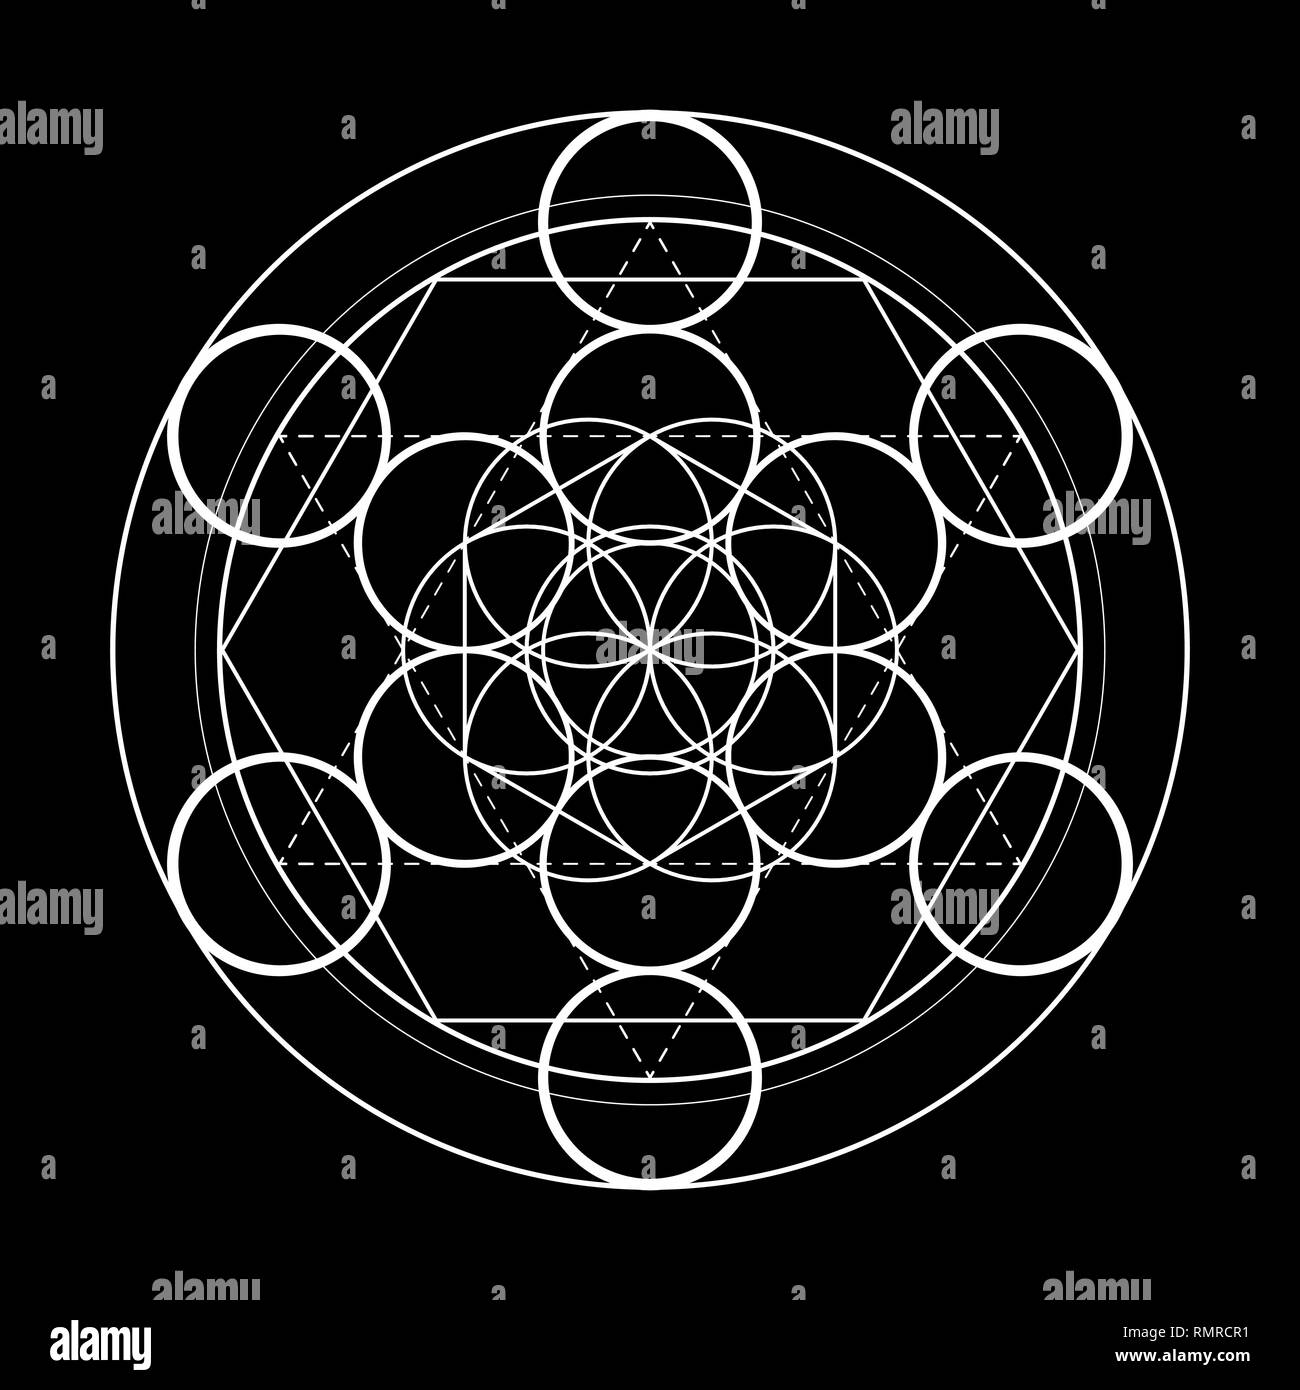 Heilige Geometrie Symbol. Metatrons Würfel auf schwarzen Hintergrund Vector Illustration Stock Vektor